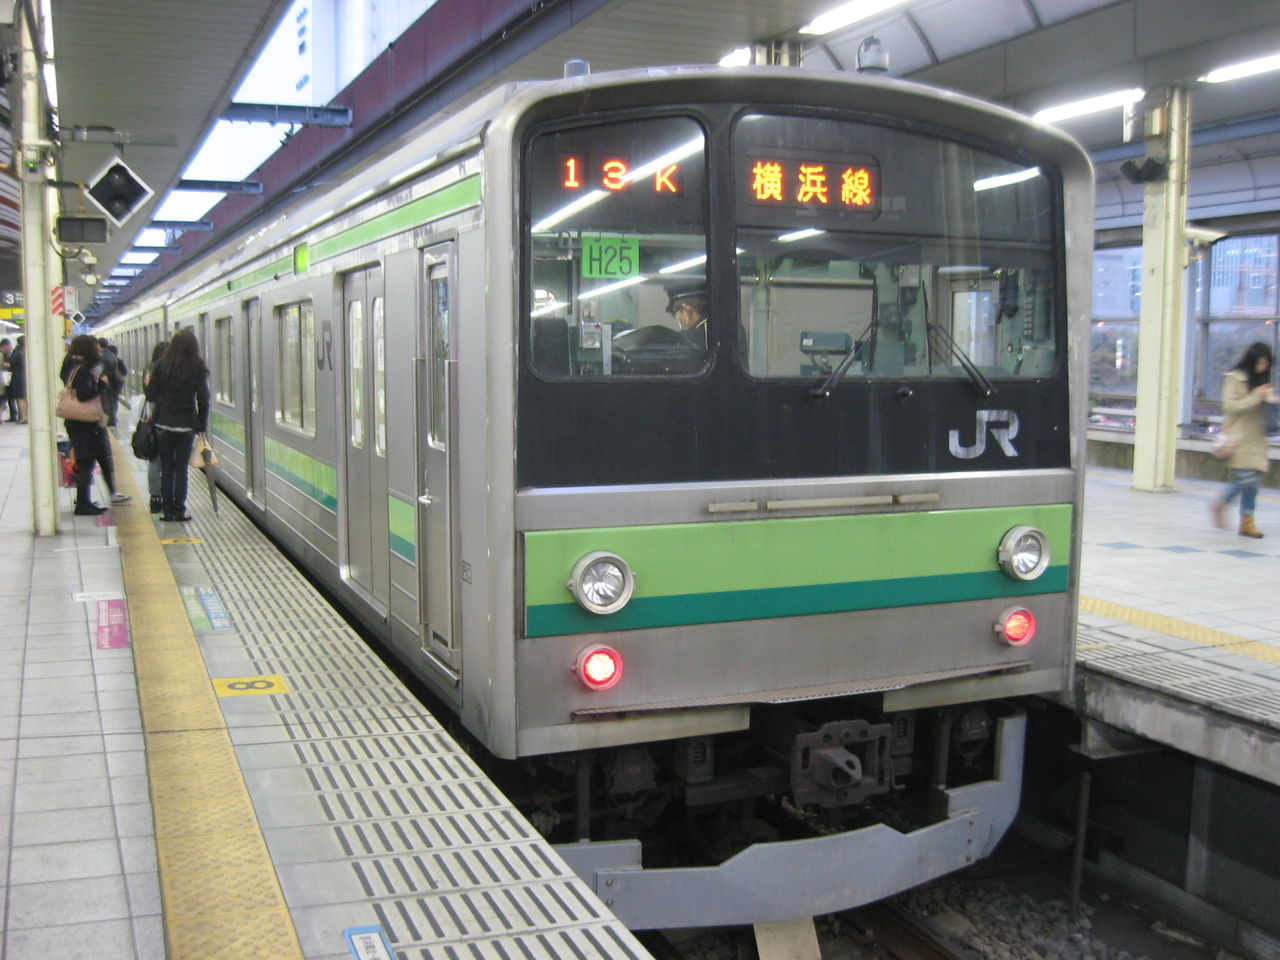 可愛い私は川栄です Akb48 チーム神奈川 が横浜線e233系電車導入キャンペーンに起用される Ske48とエアバスa380超絶推し男のblog